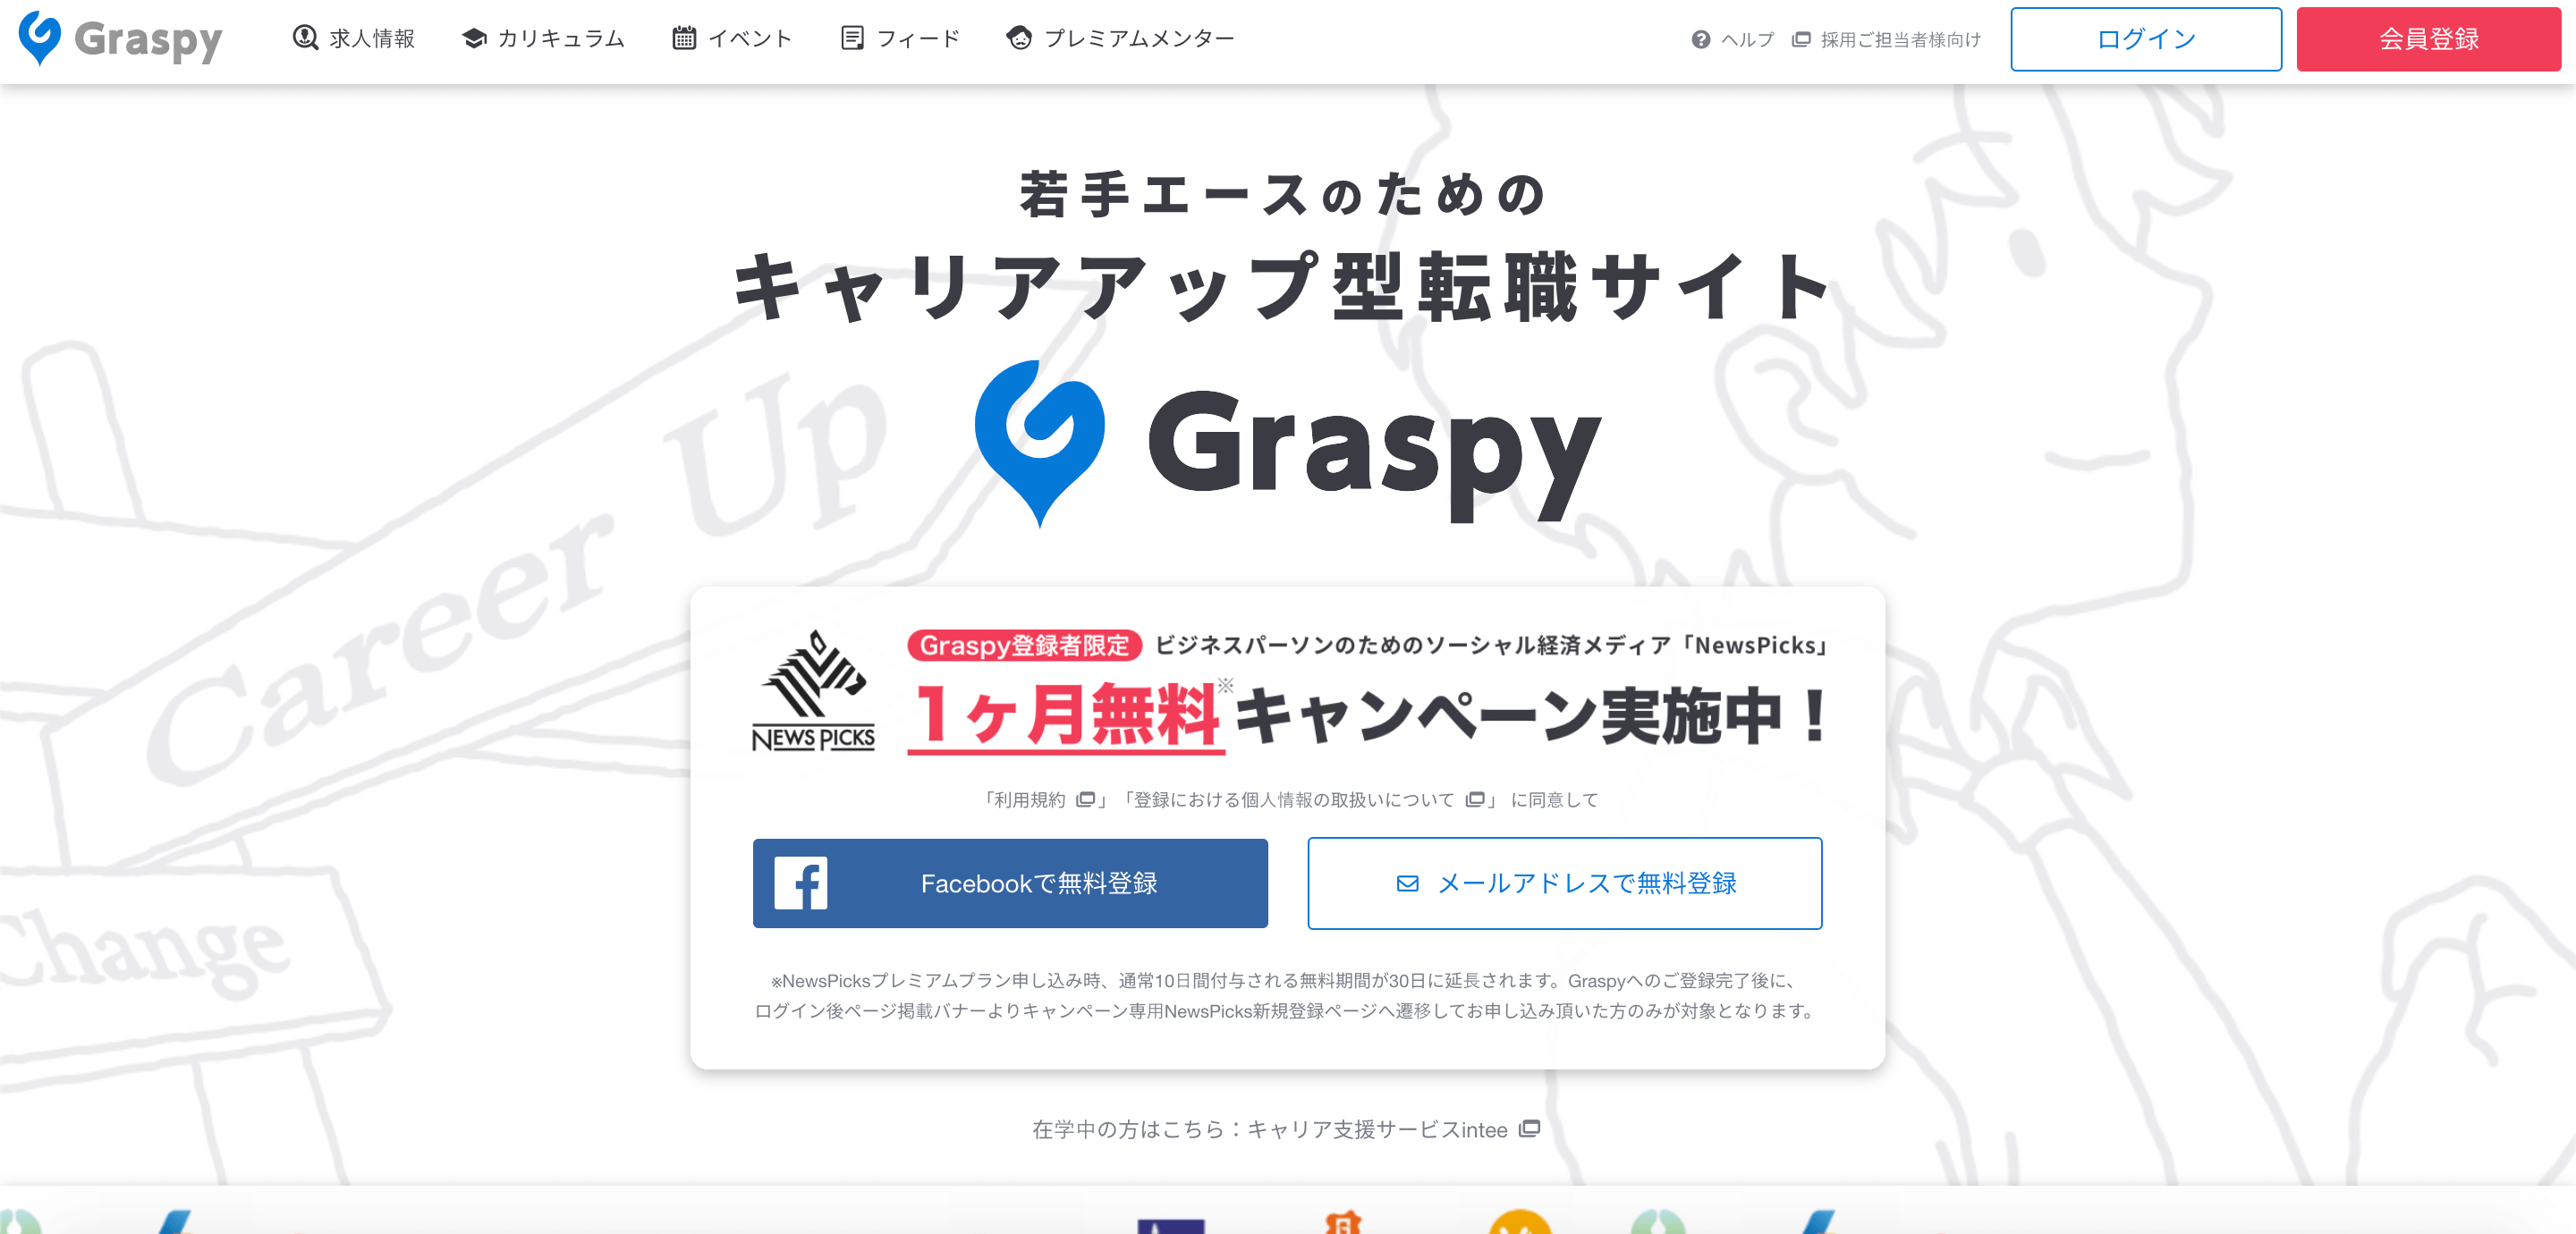 キャリアアップ型支援サイトGraspy